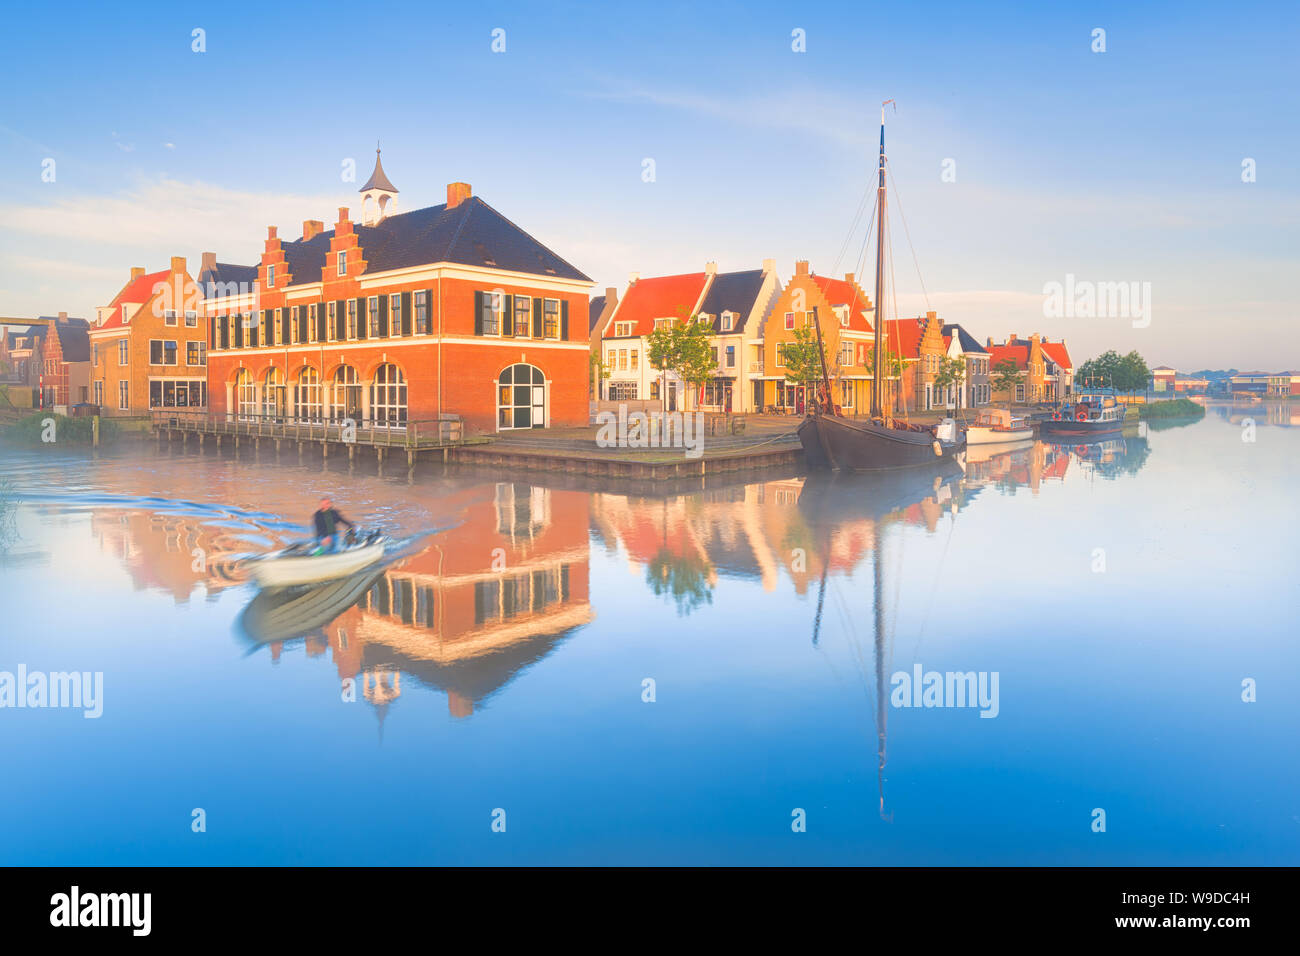 Maisons hollandaises traditionnelles avec un canal et bateaux sur un matin de printemps brumeux avec un ciel bleu et des couleurs vives - Pays-Bas - le droit de Voyage Banque D'Images